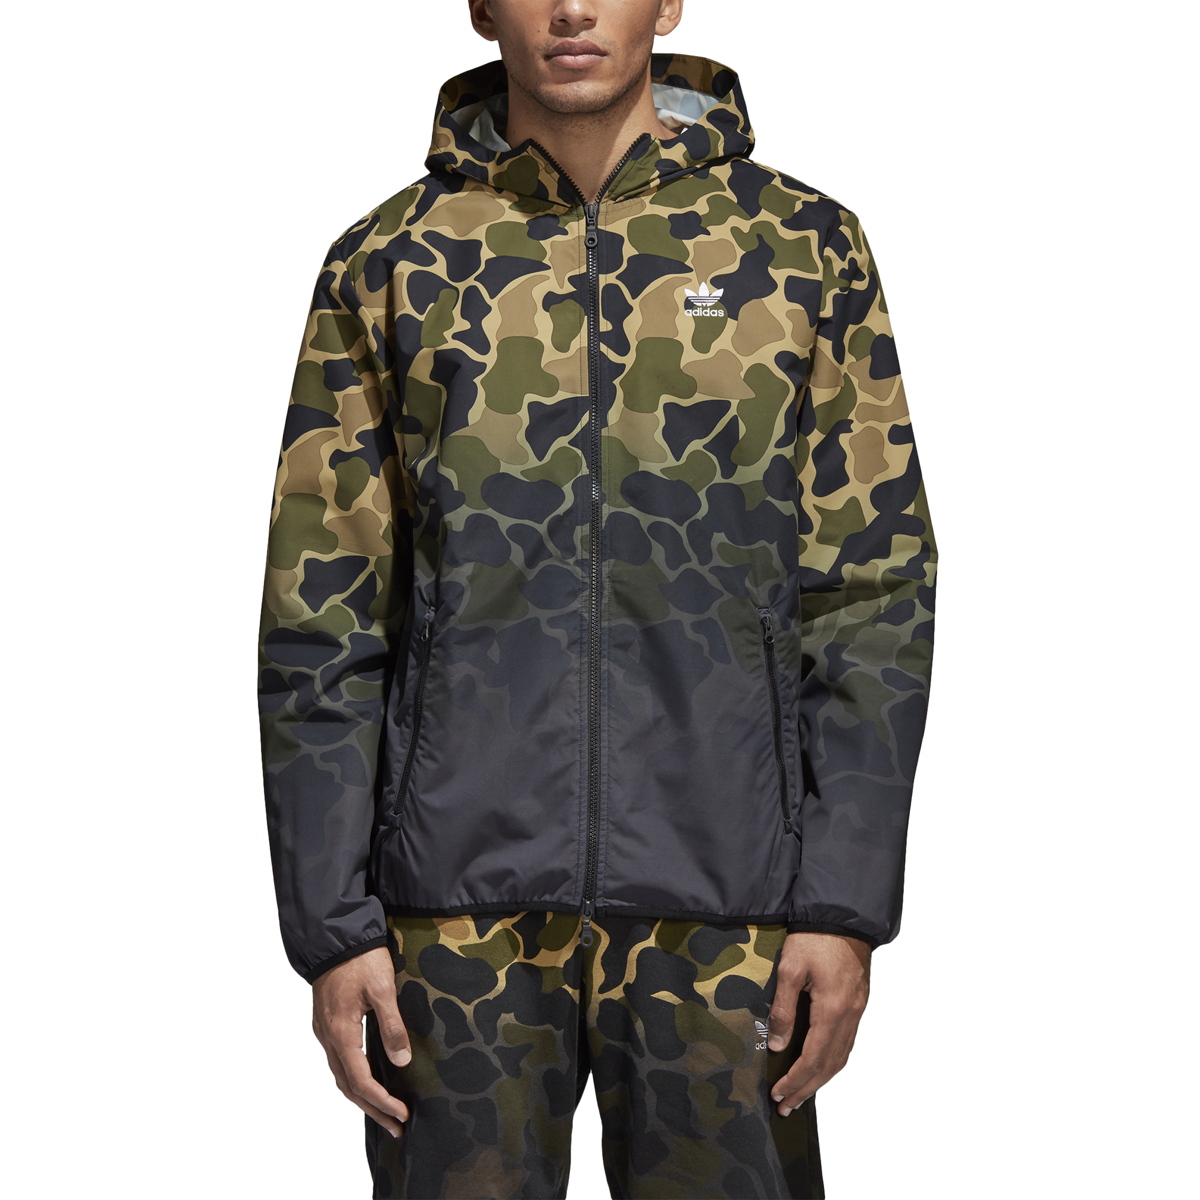 adidas men's camouflage jacket